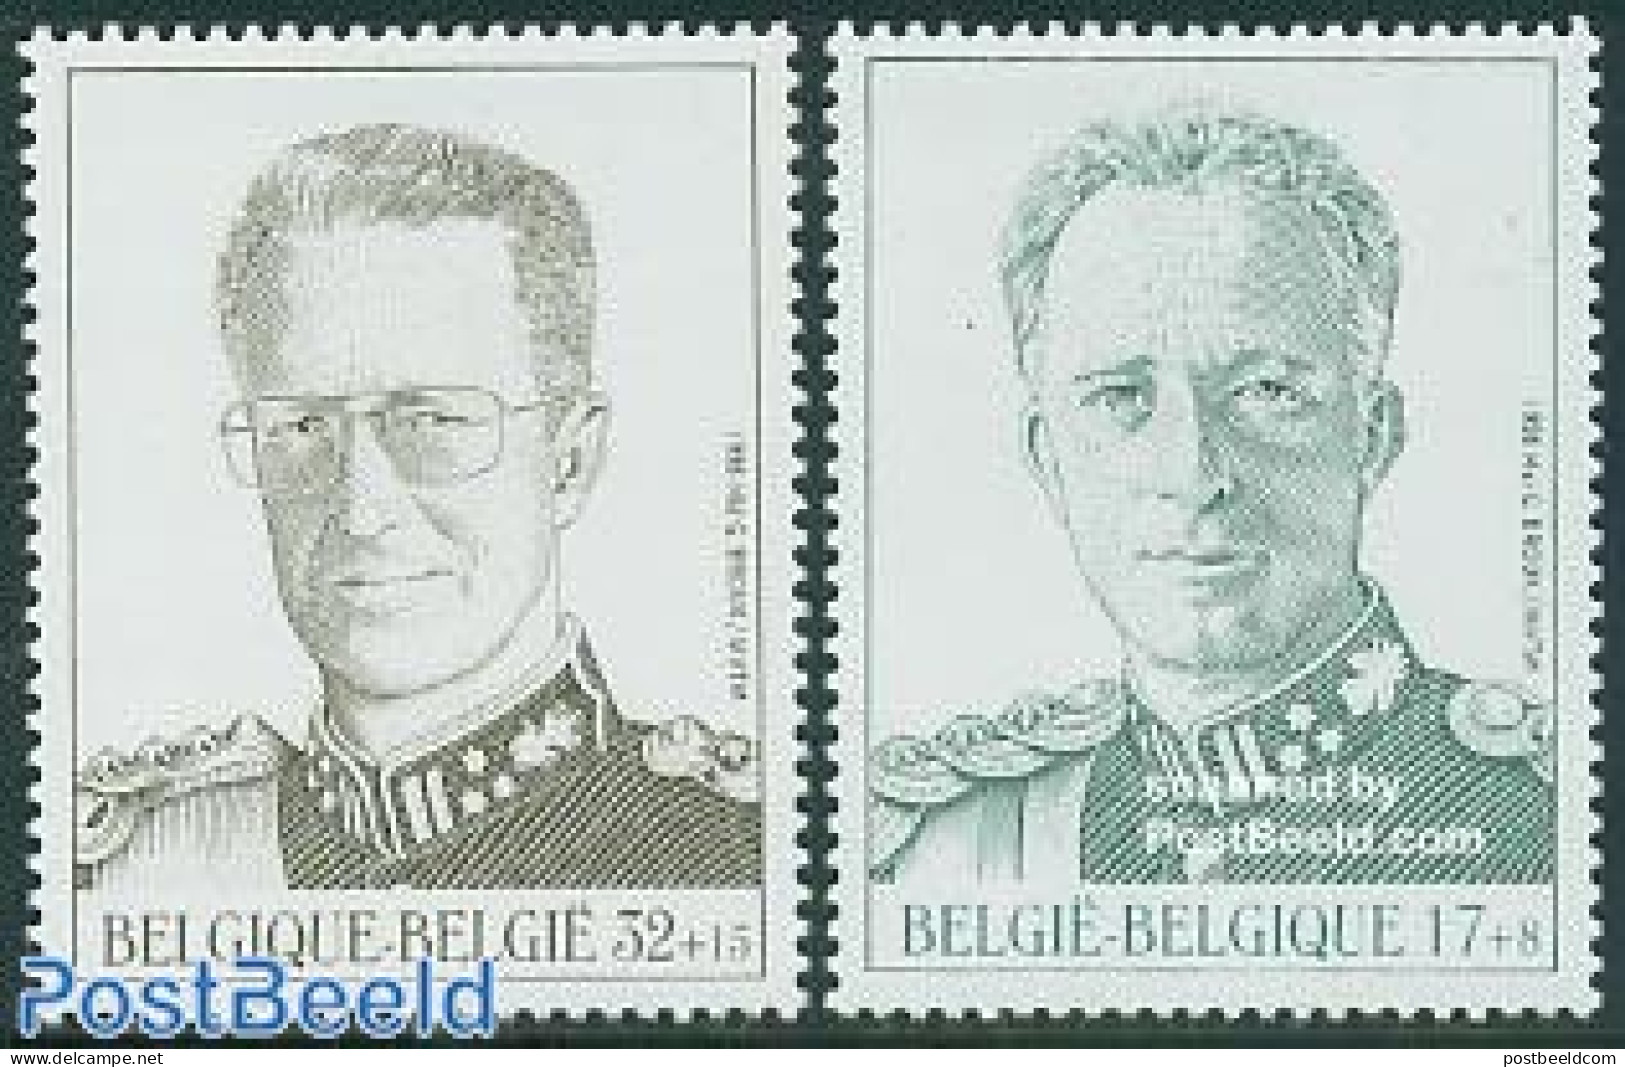 Belgium 1998 Kings 2v, Mint NH, History - Kings & Queens (Royalty) - Unused Stamps